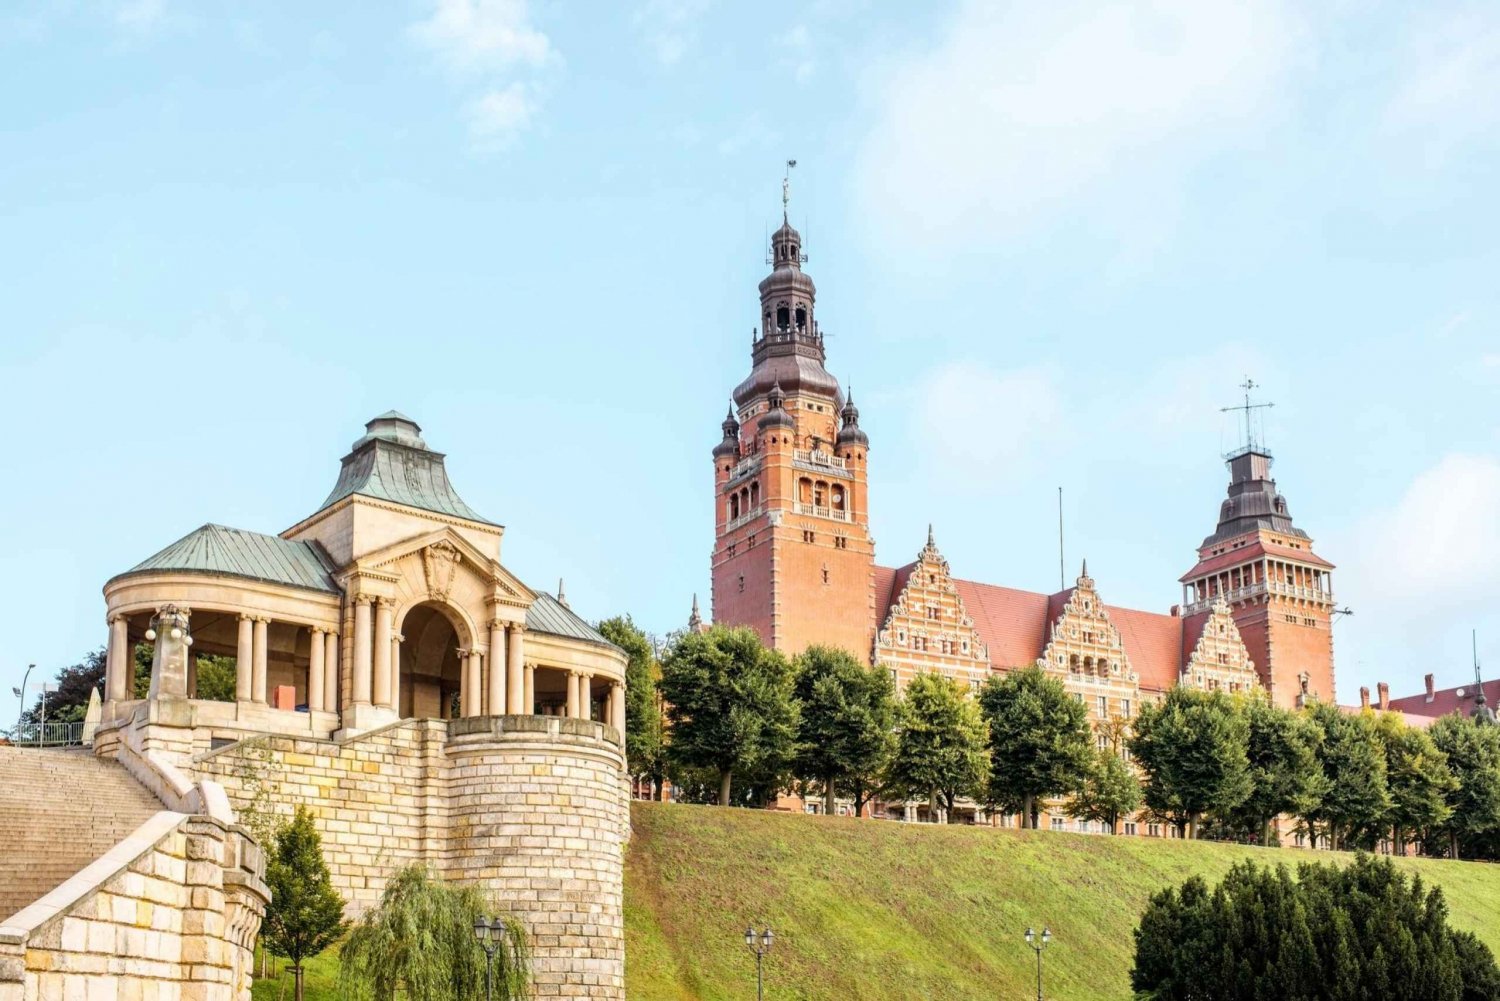 Szczecin : transport depuis Berlin et excursion d'une journée